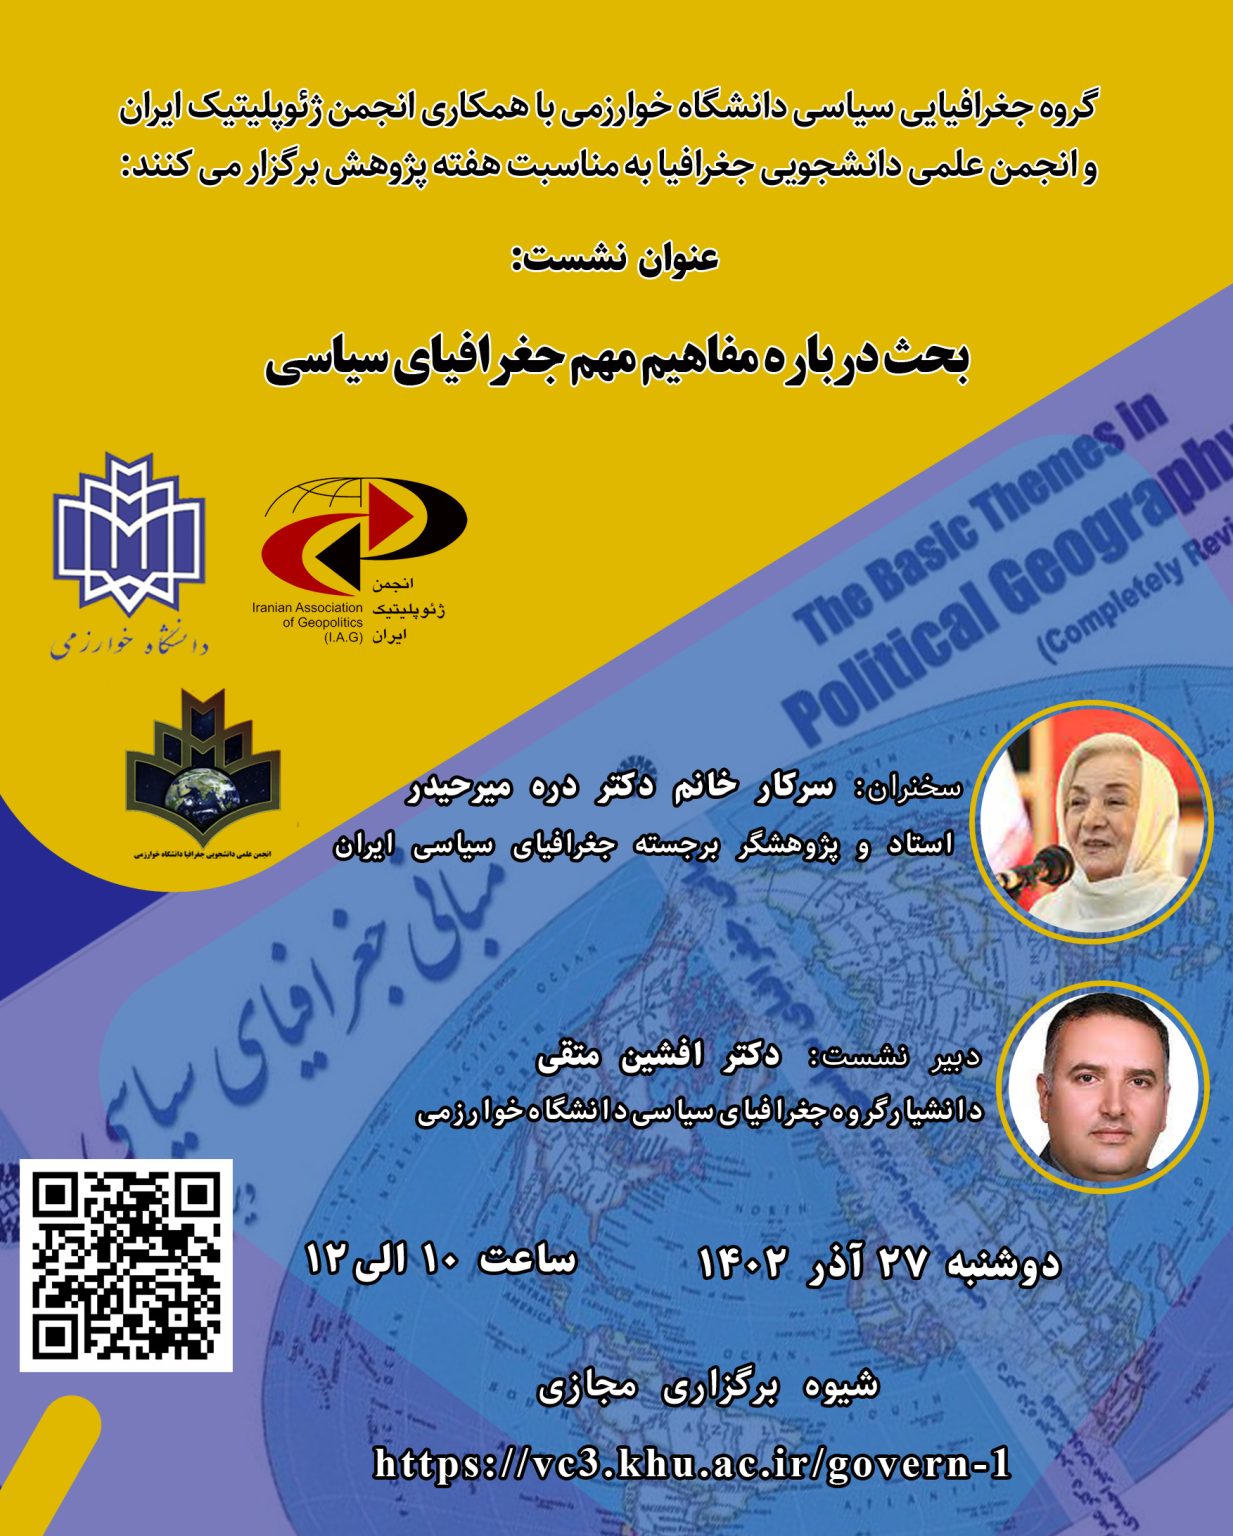 نشست علمی بحث درباره مفاهیم مهم جغرافیای سیاسی انجمن ژئوپلیتیک ایران